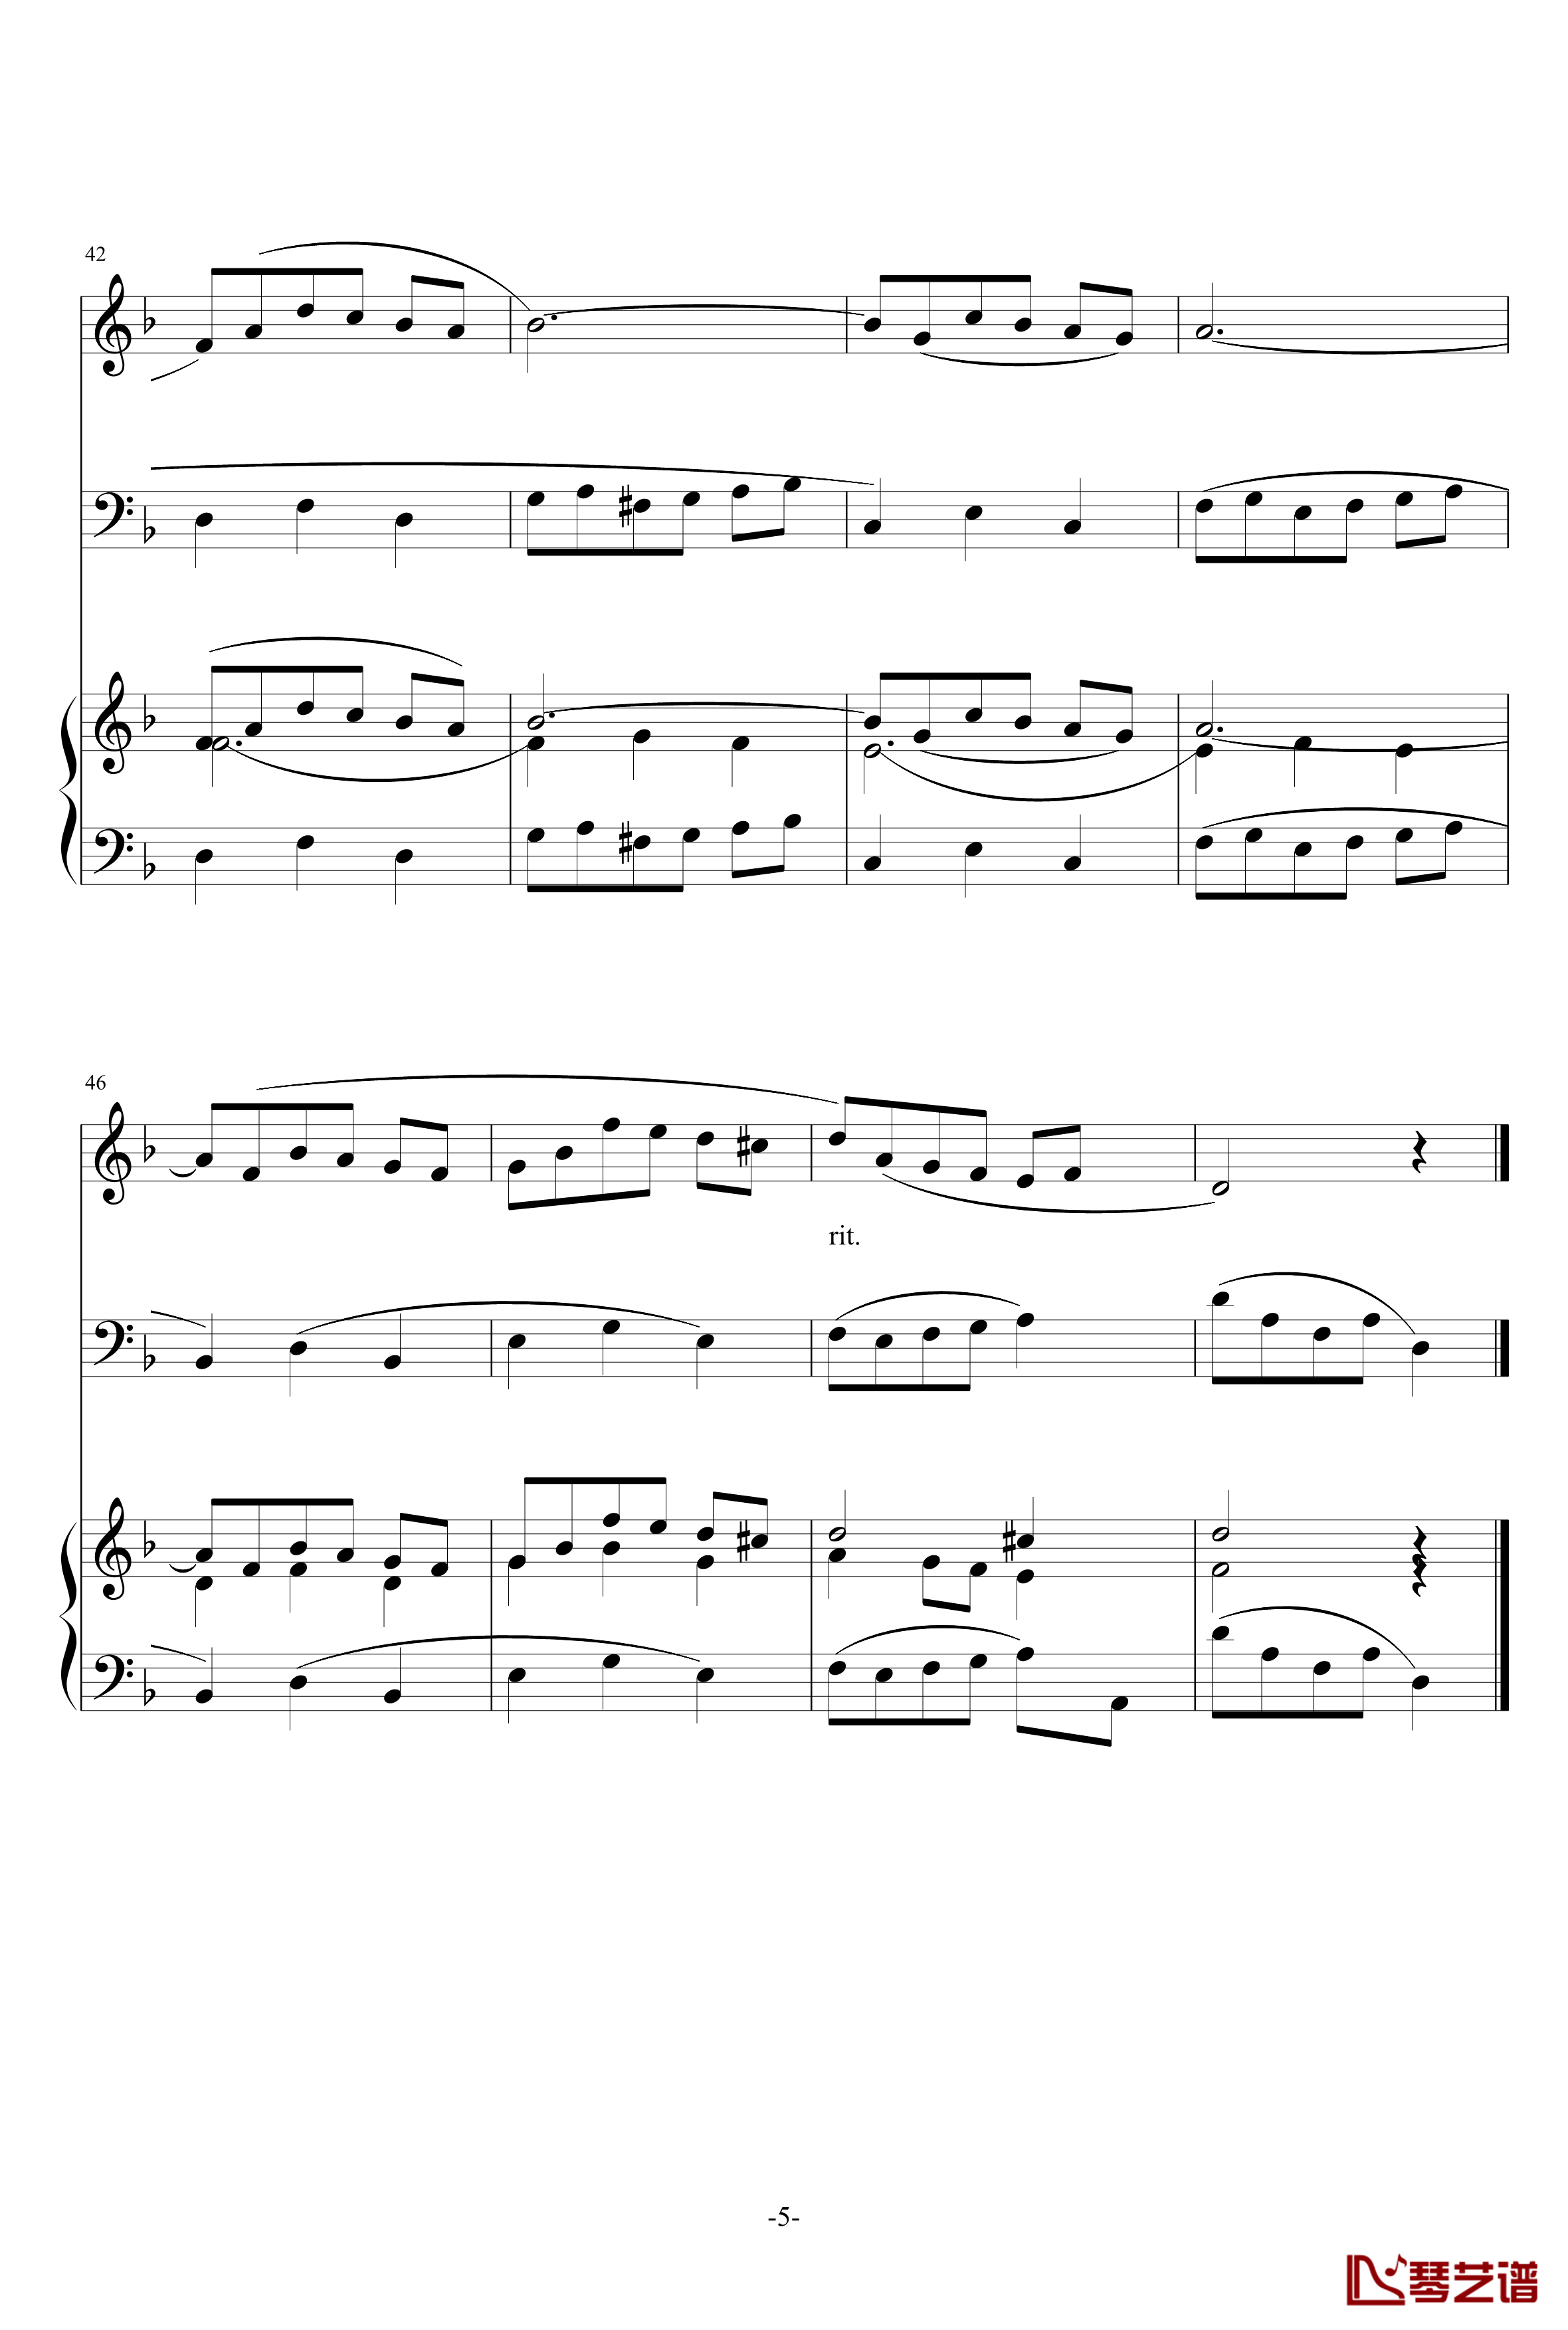 巴洛克风格小提琴协奏曲第一乐章钢琴谱-巴洛克5